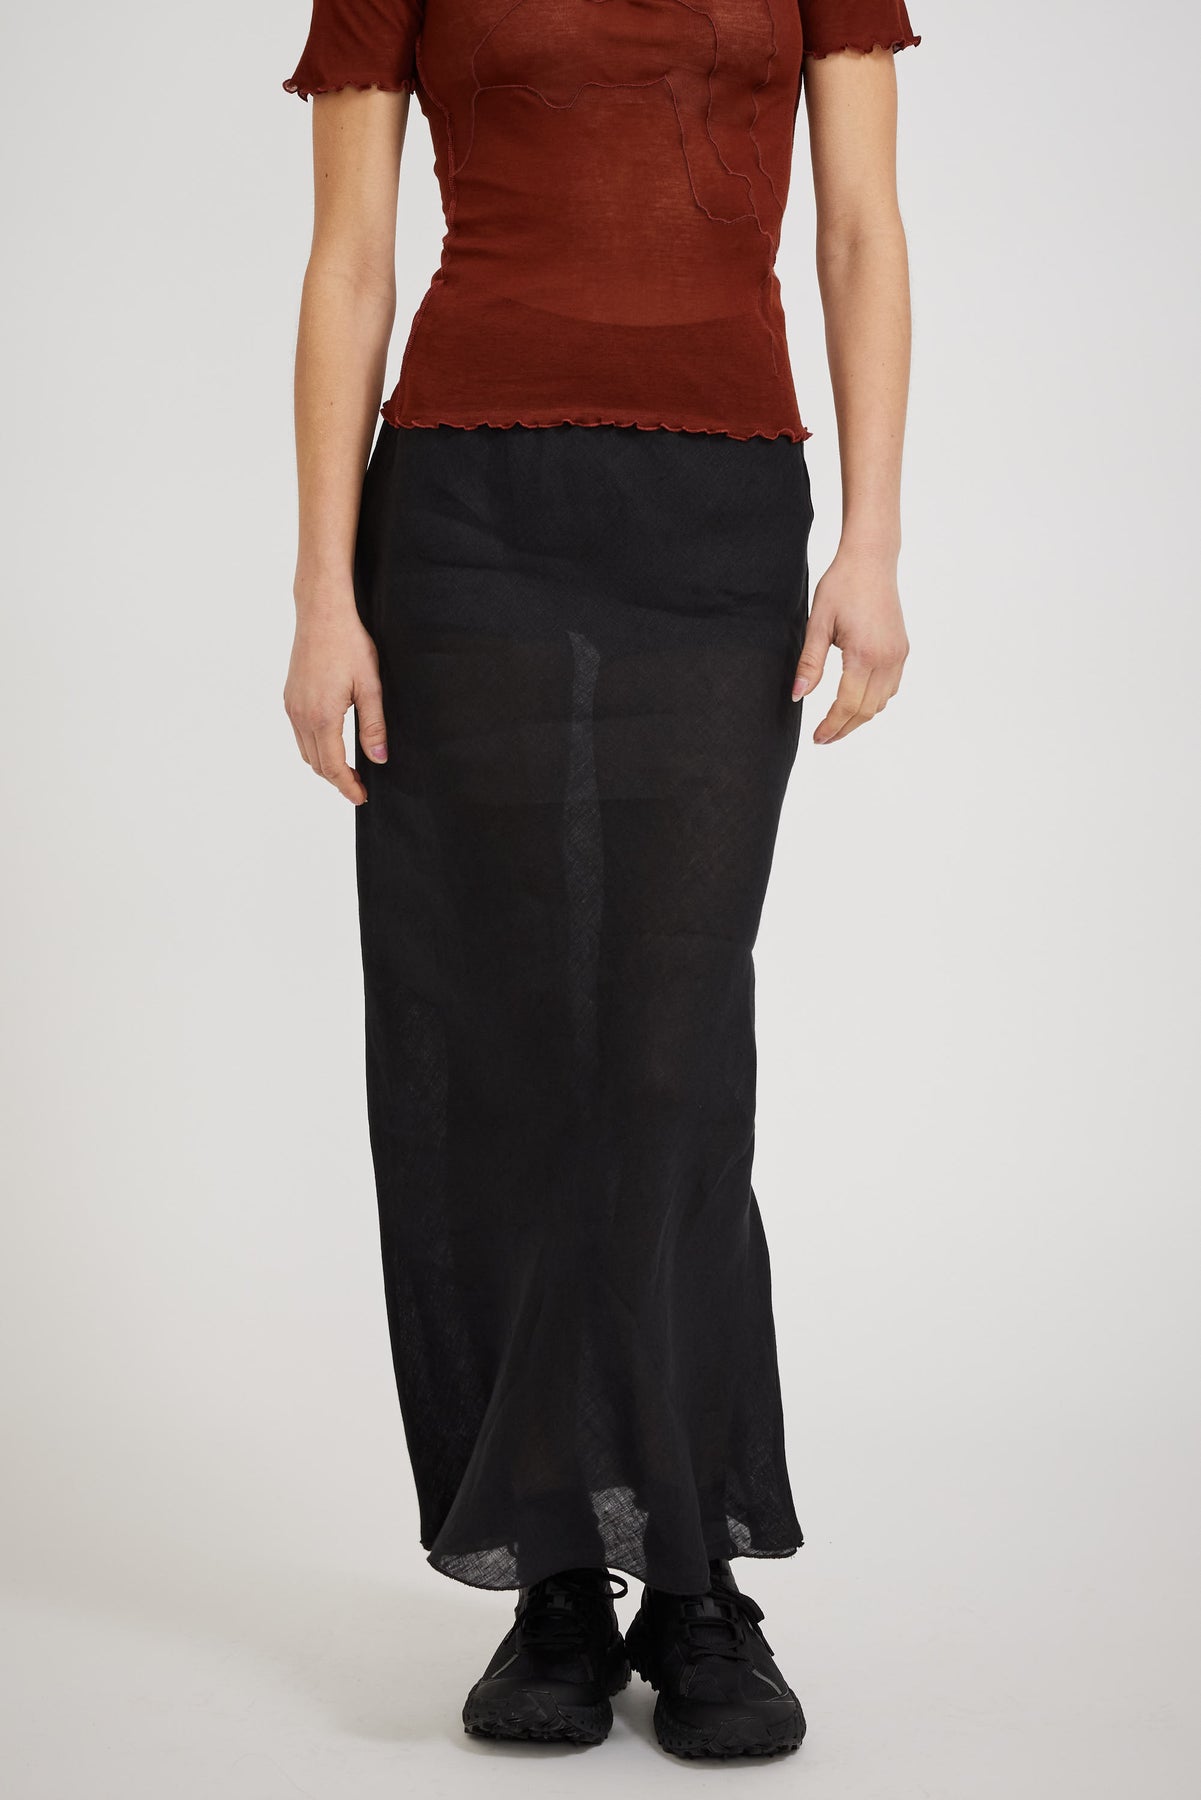 Baserange Dydine Skirt Black | Maplestore